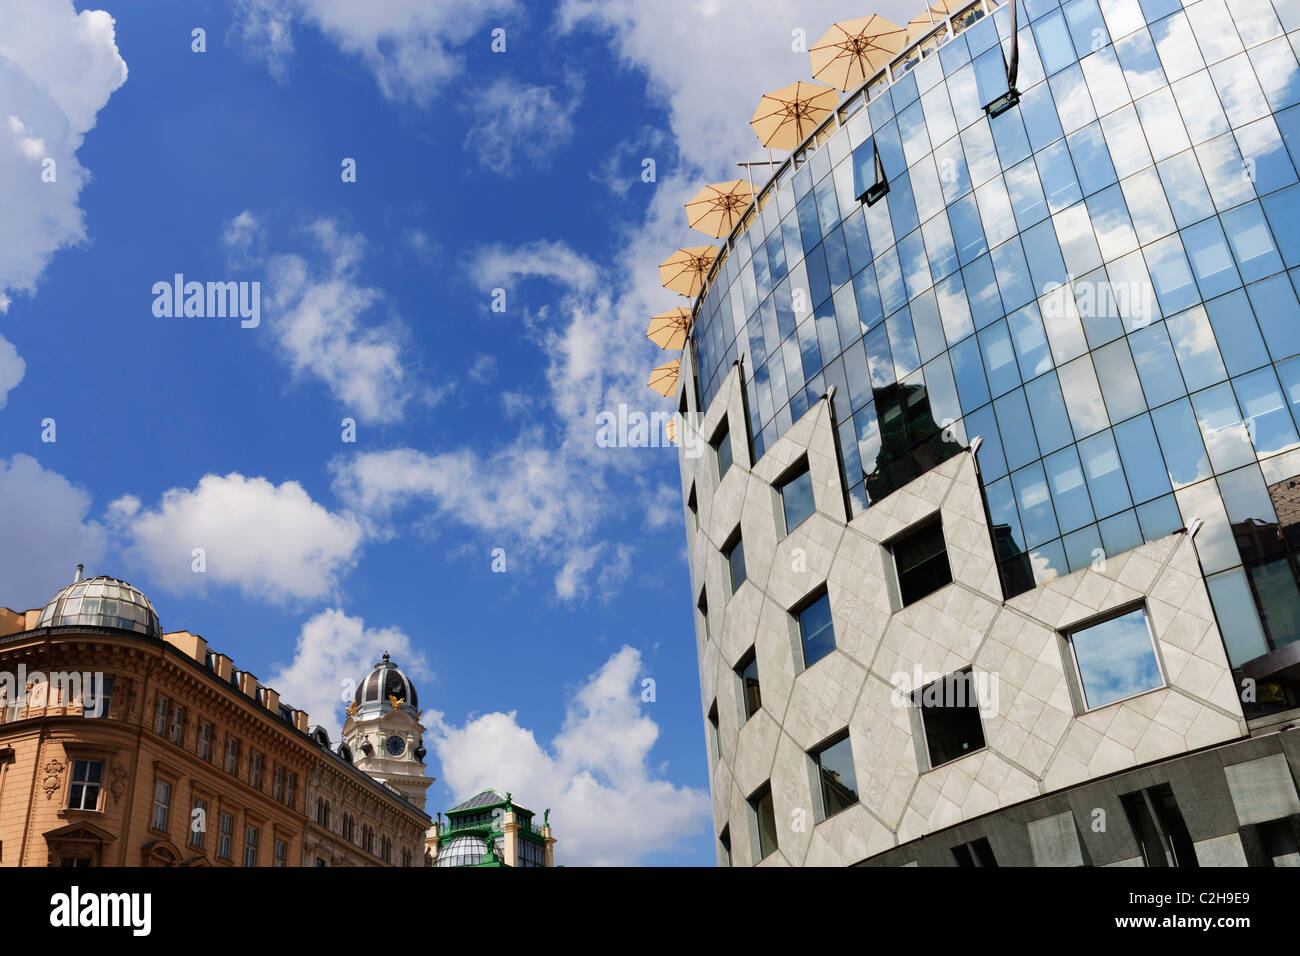 Détail de la maison Haas contre ciel bleu avec des nuages - Vienne, Autriche. Banque D'Images